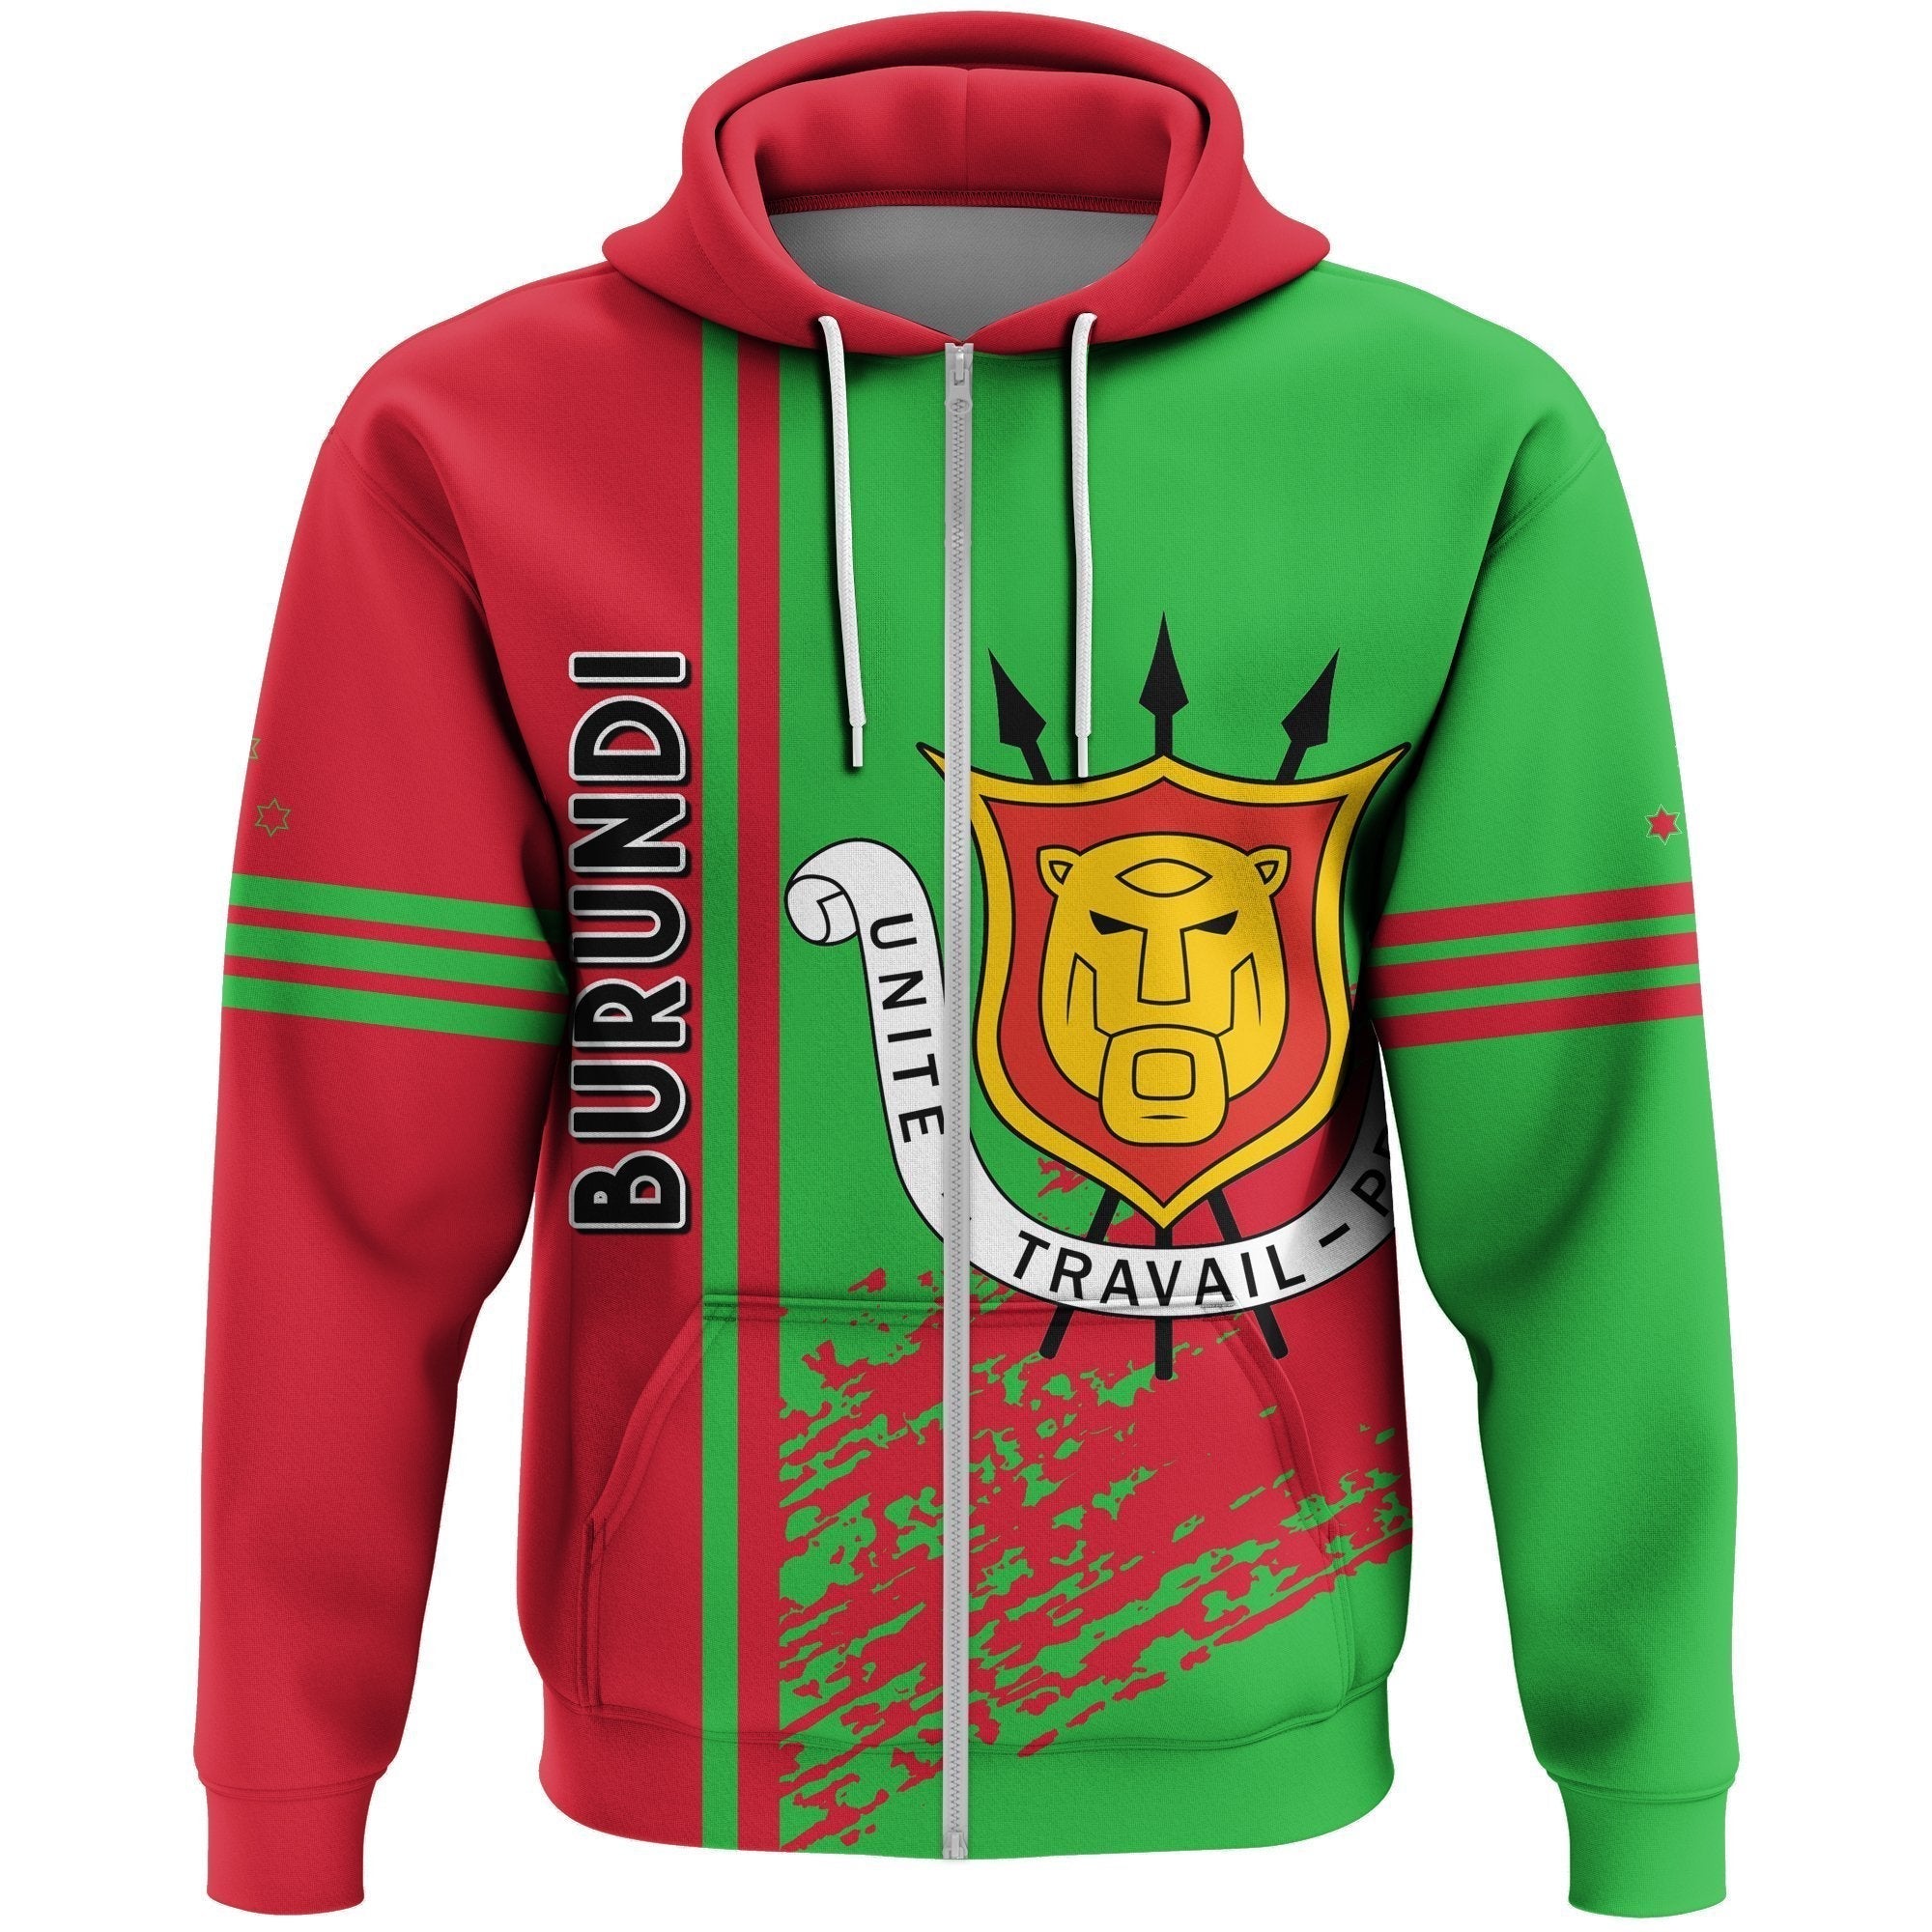 wonder-print-shop-hoodie-burundi-quarter-style-zip-hoodie